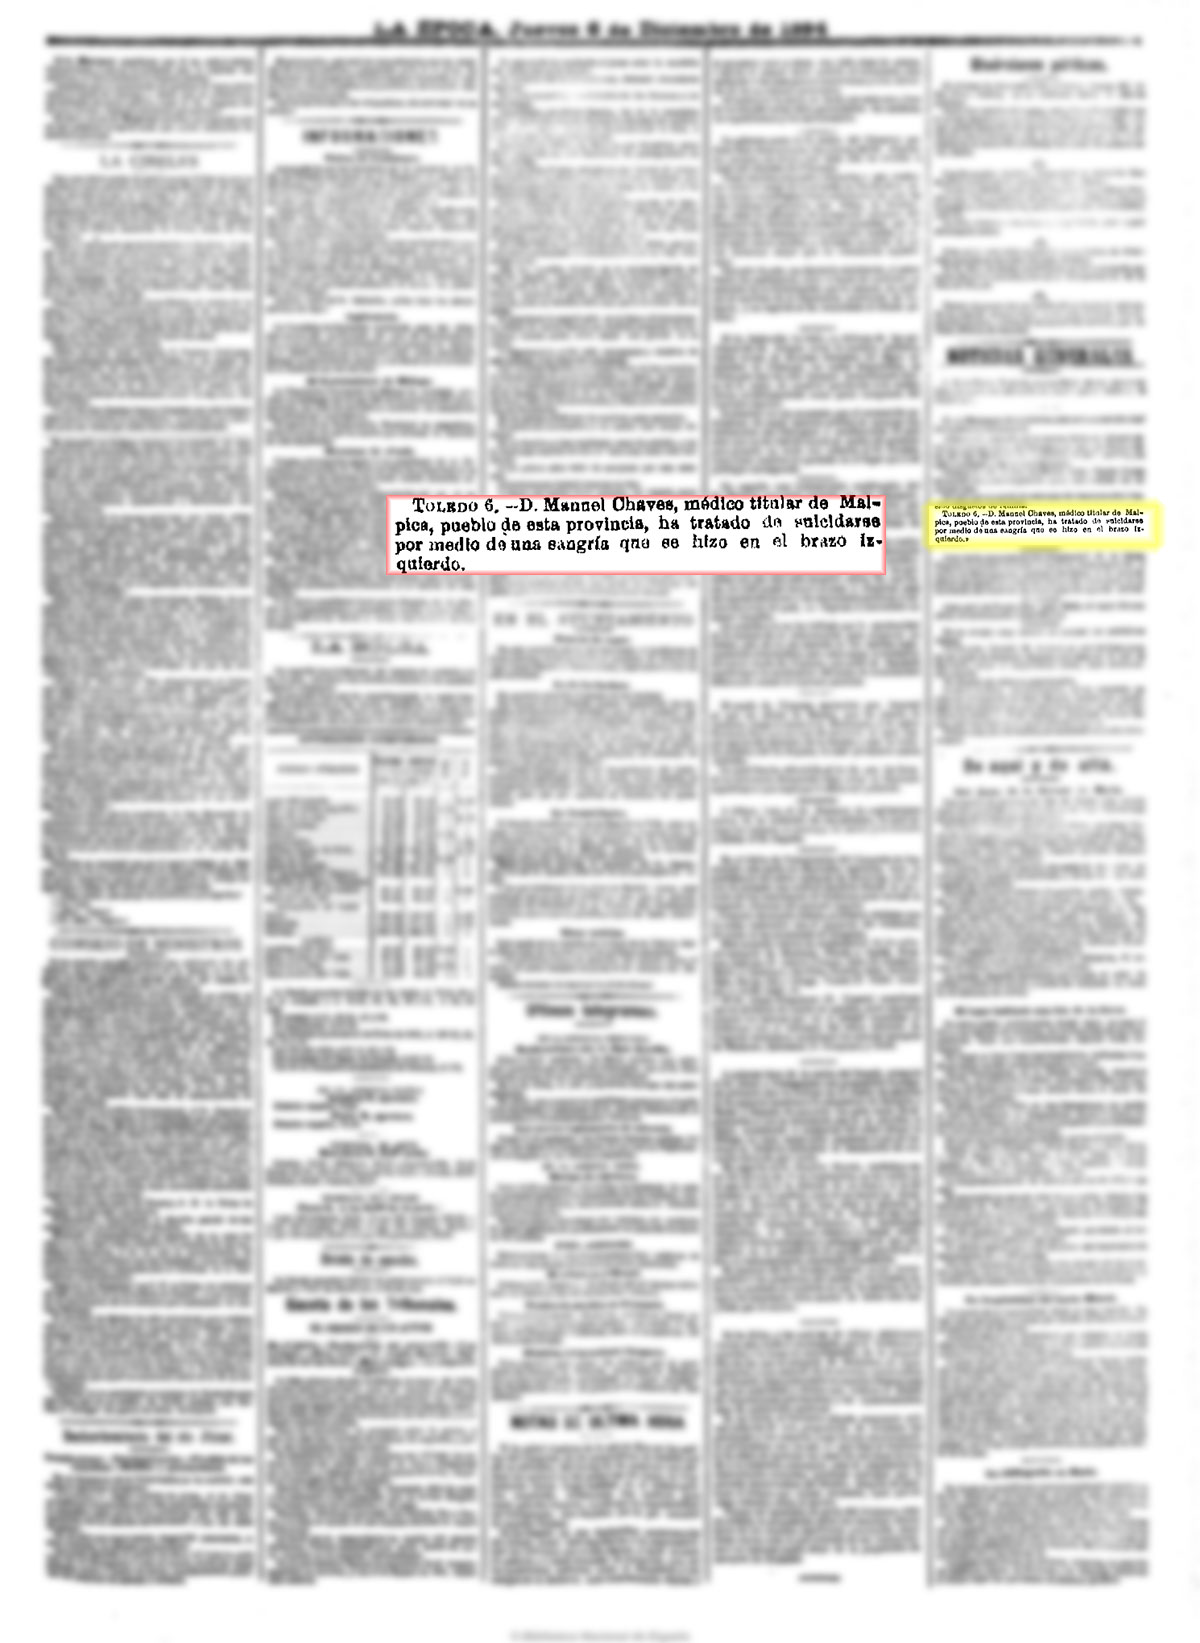 La Época 6-12-1894, n.º 16.002, página 3. Intento de suicidio del médico local